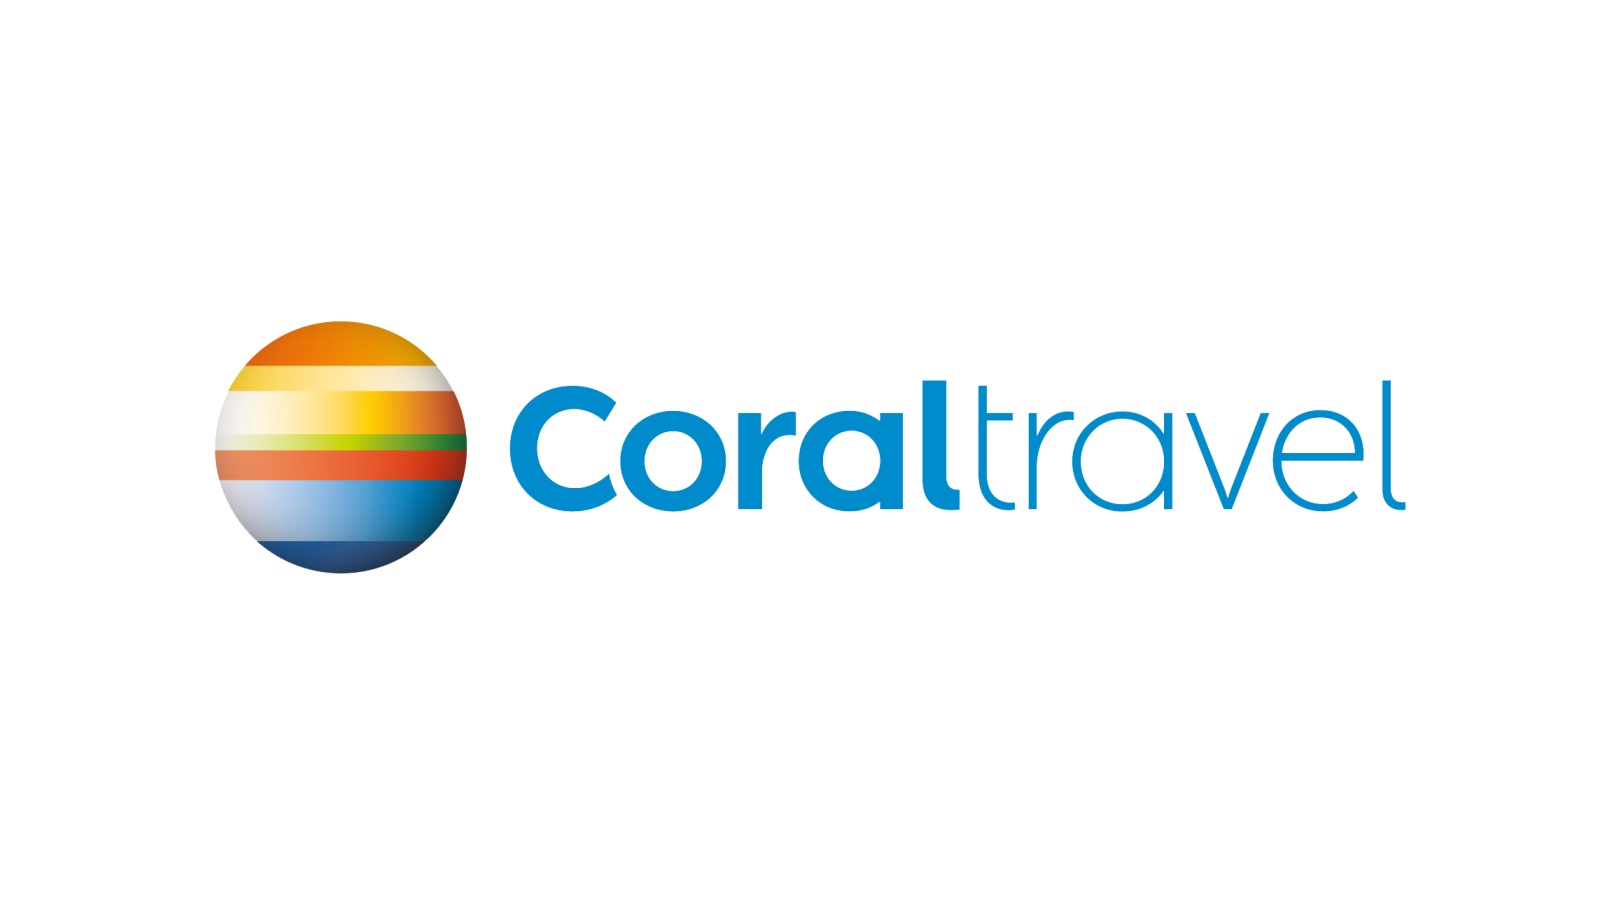 Coral логотип. Корал Тревел лого. Логотип корол Тревел. Корал Тревел реестр туроператоров. Корал тревел туристы